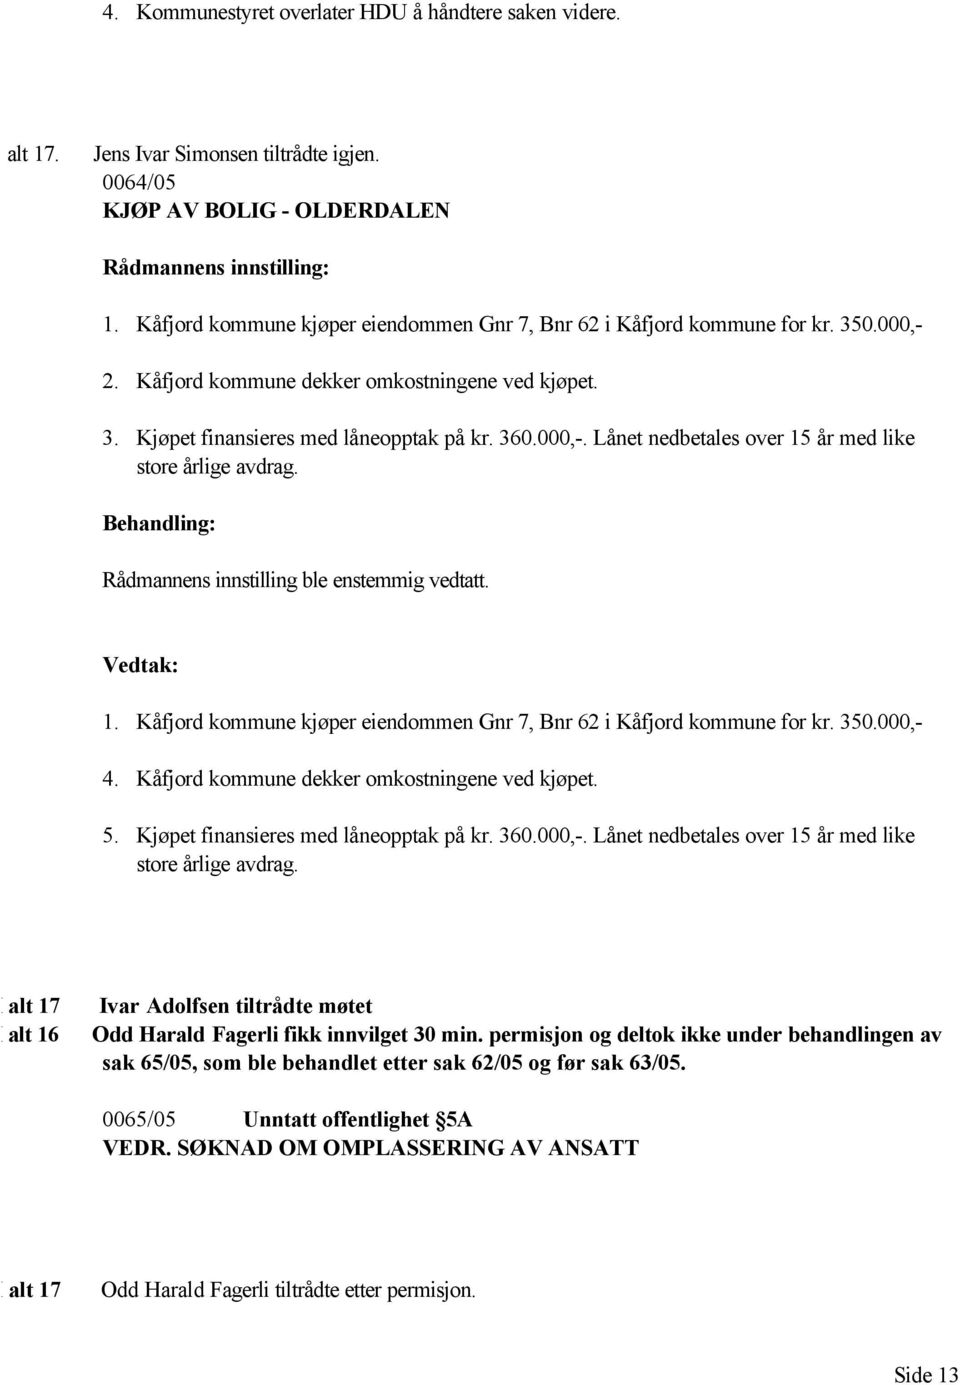 Rådmannens innstilling ble enstemmig vedtatt. 1. Kåfjord kommune kjøper eiendommen Gnr 7, Bnr 62 i Kåfjord kommune for kr. 350.000,- 4. Kåfjord kommune dekker omkostningene ved kjøpet. 5.